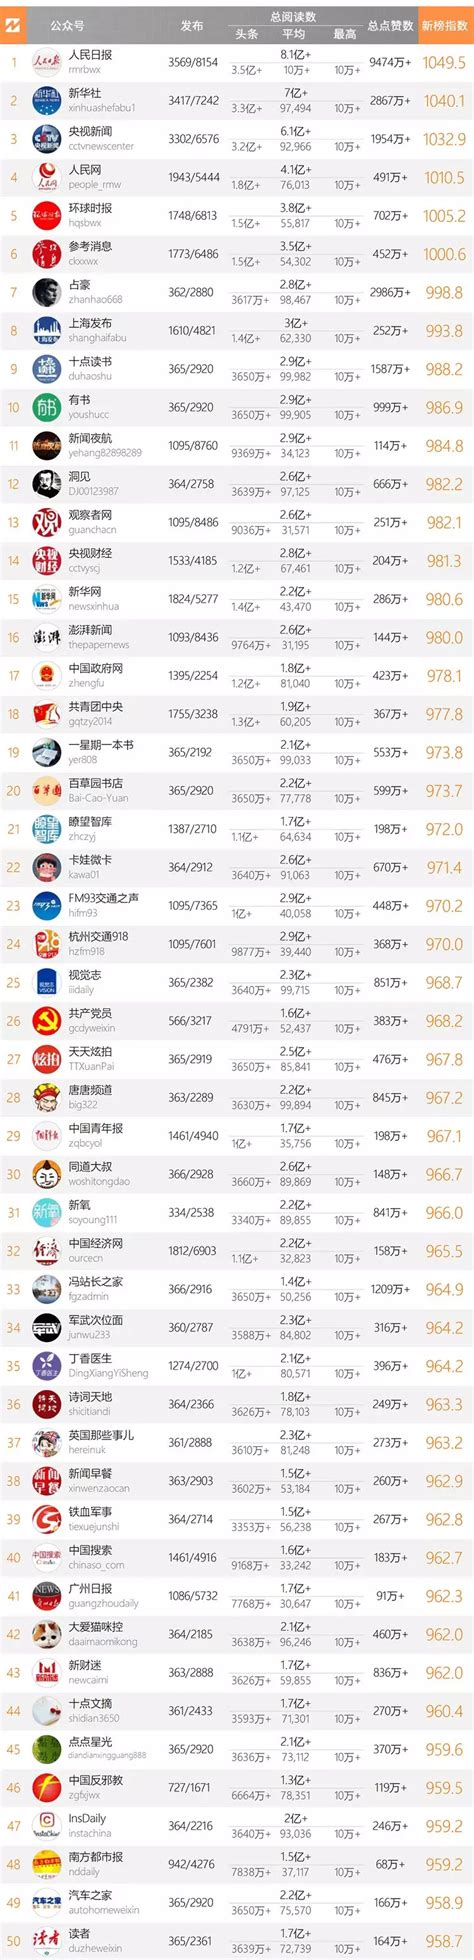 十大微信公众号排名榜-2018中国微信500强排名榜(阅读量排序)_排行 ...